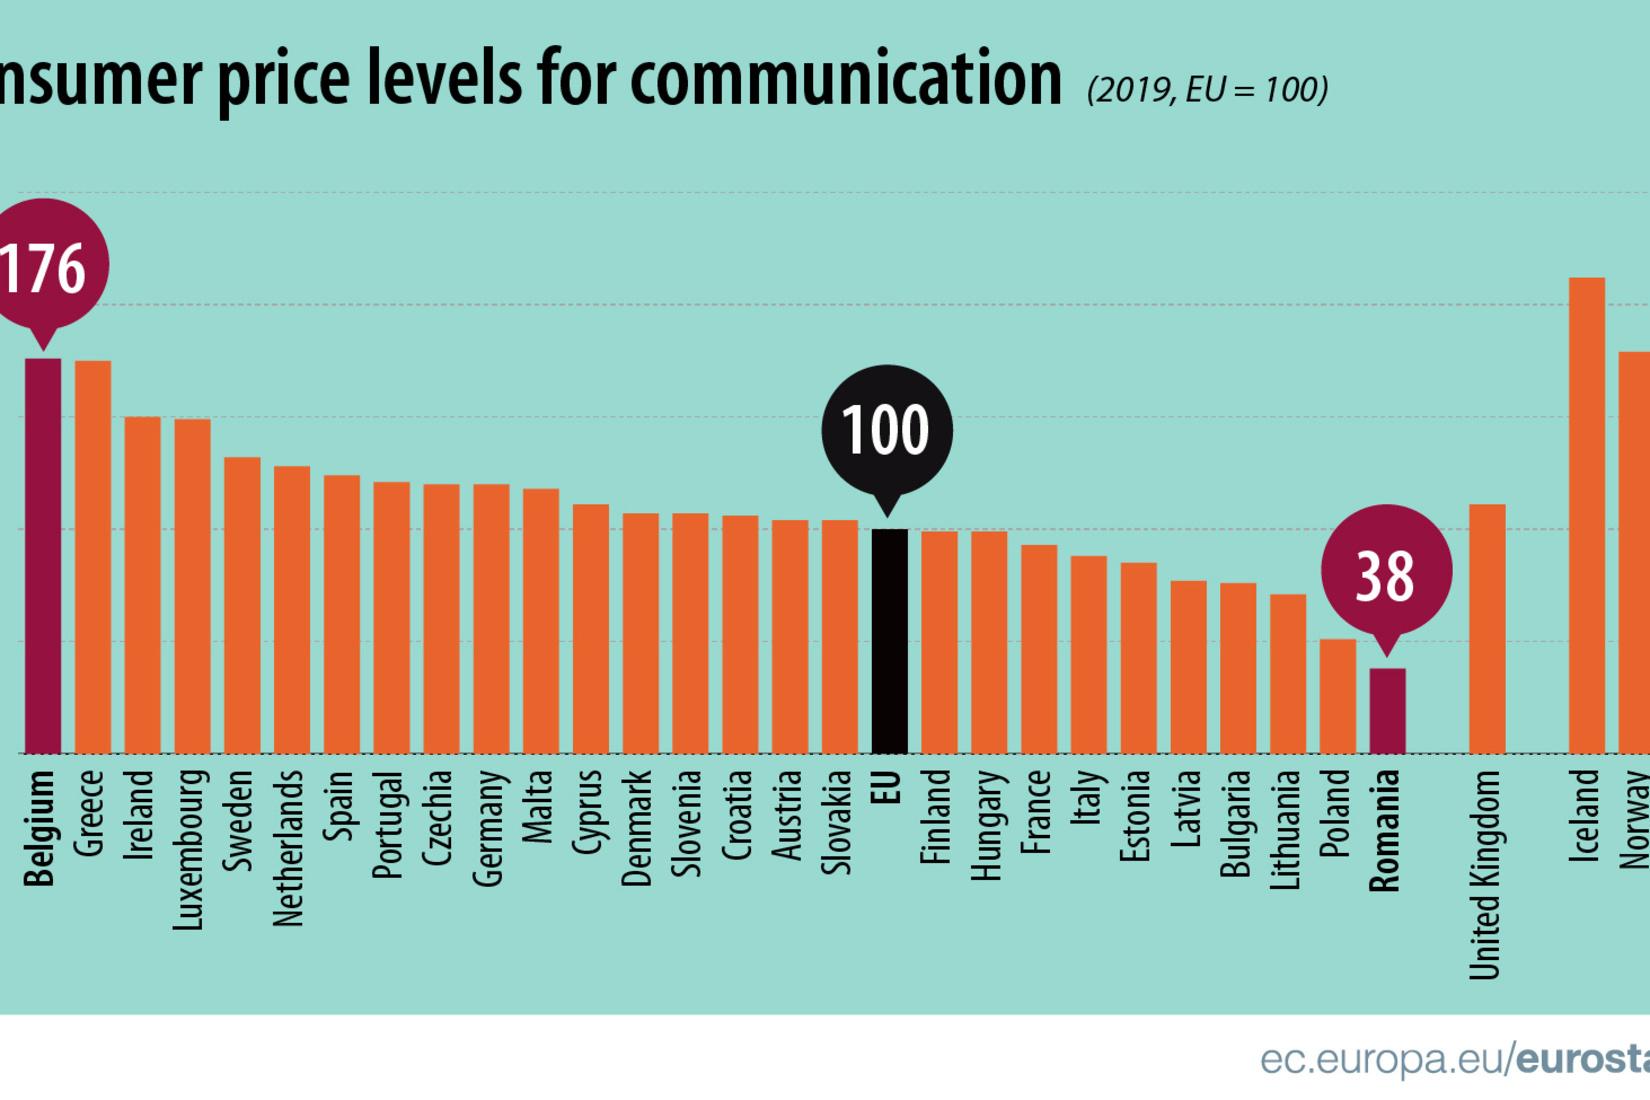 België is koploper in de EU voor de prijzen van communicatie.